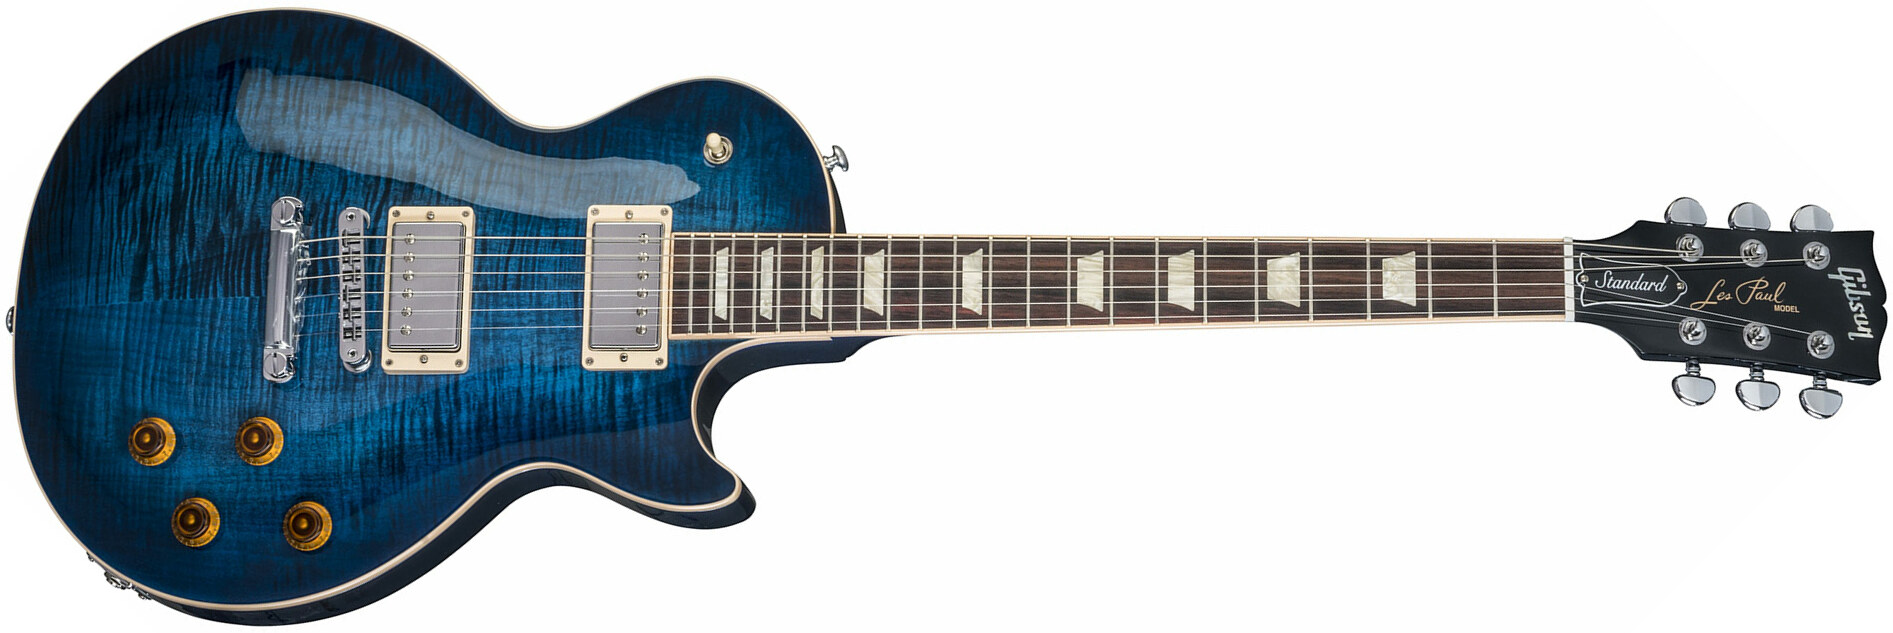 Gibson Les Paul Standard - Cobalt Burst - Guitarra eléctrica de corte único. - Main picture